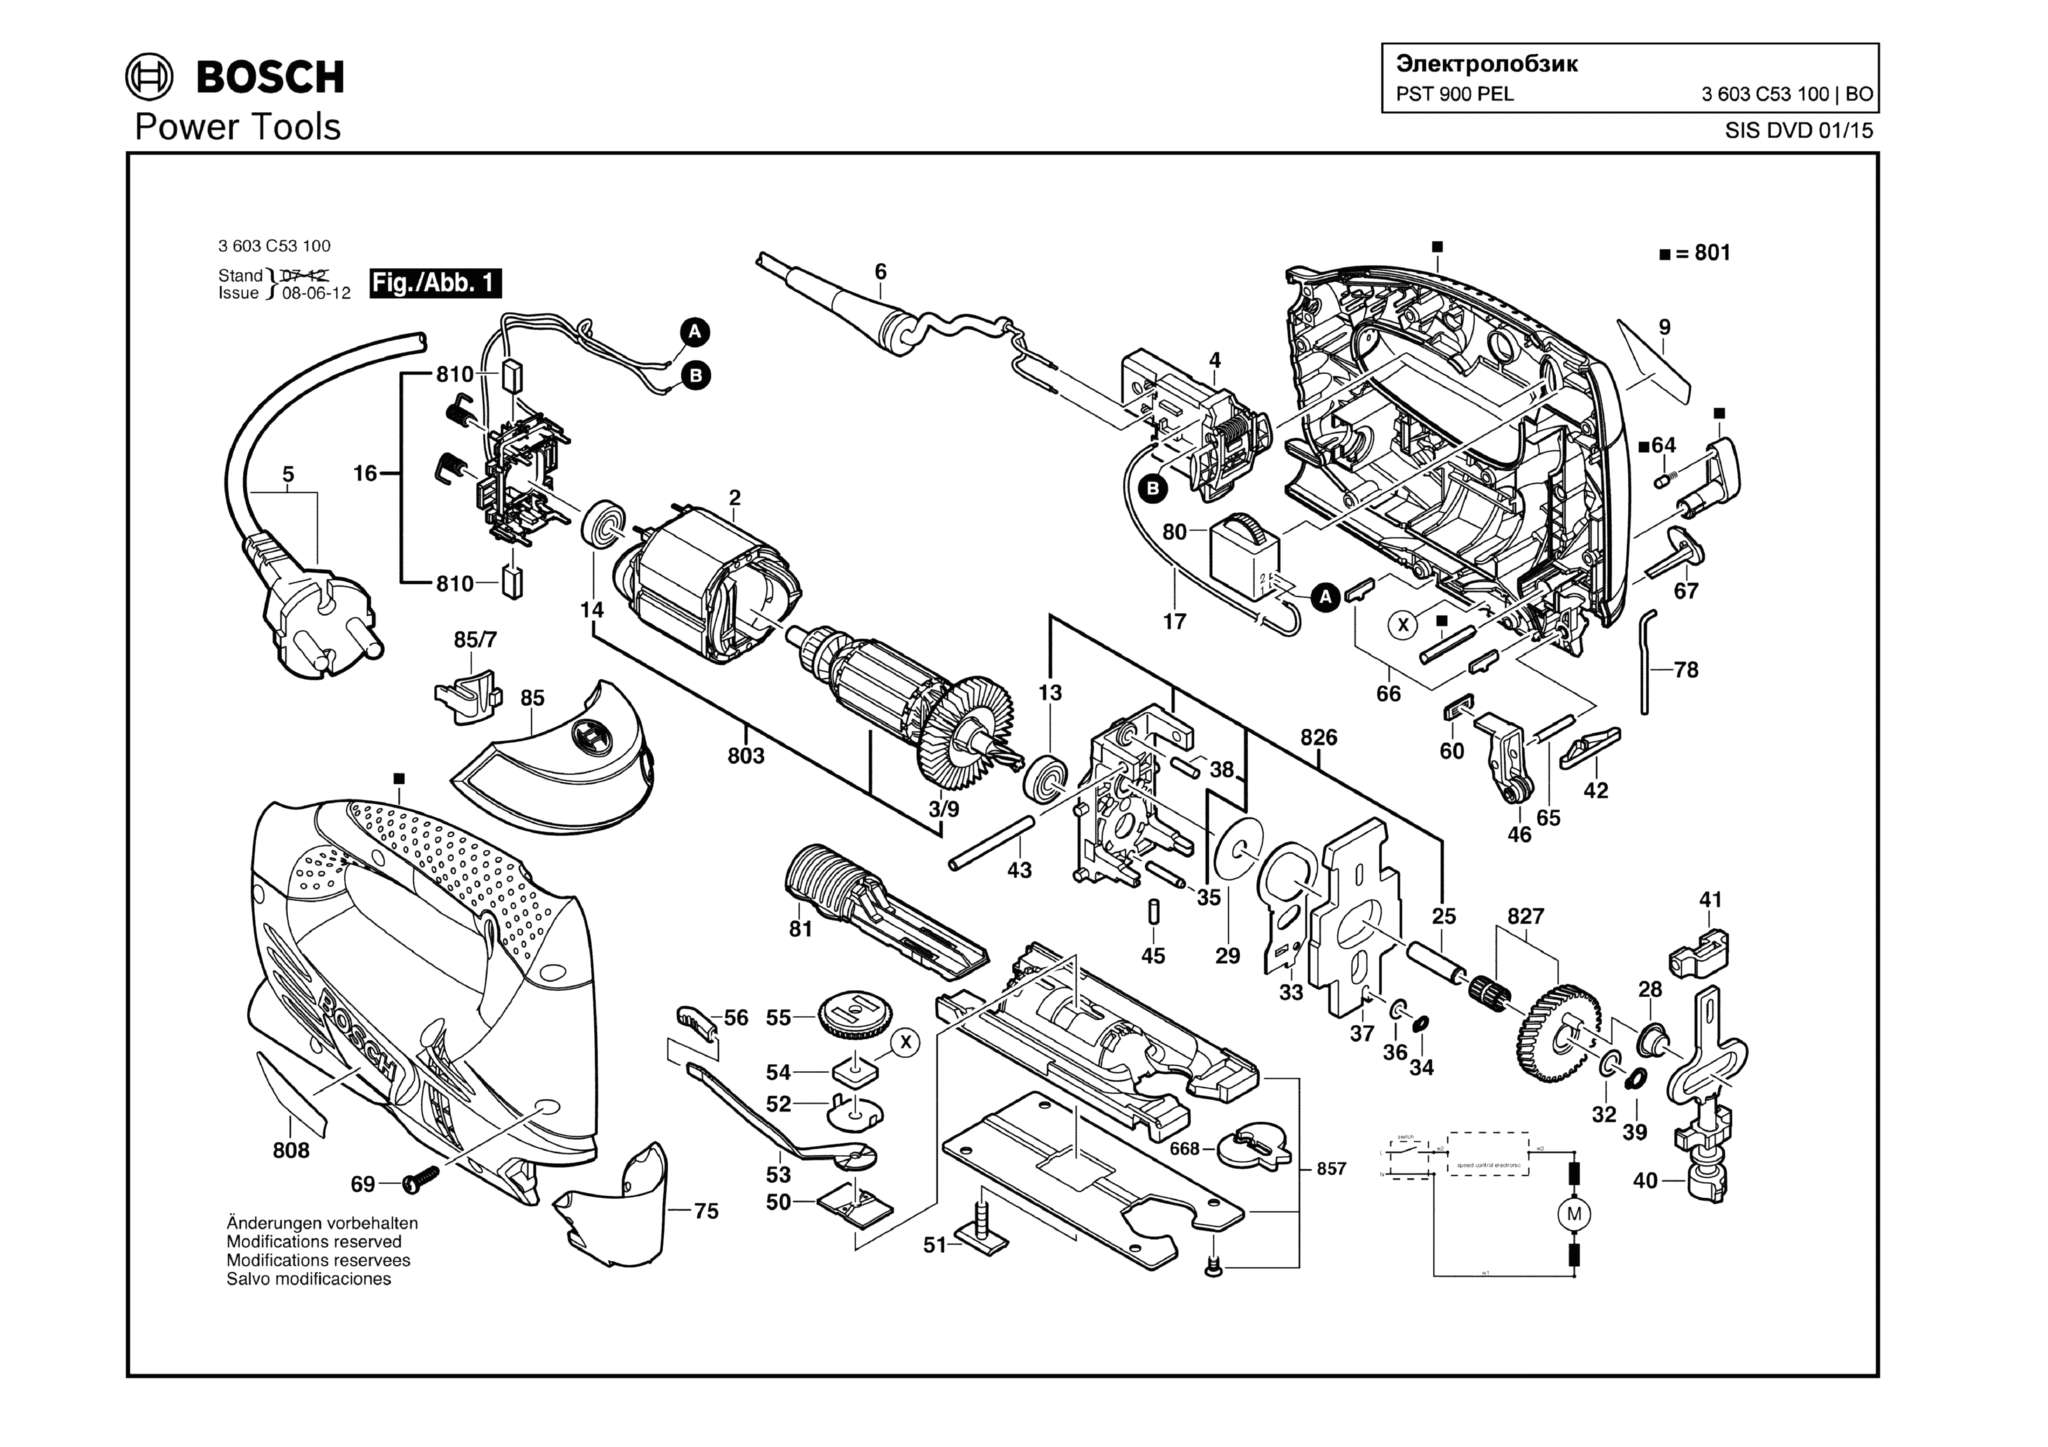 Запчасти, схема и деталировка Bosch PST 900 PEL (ТИП 3603C53100)